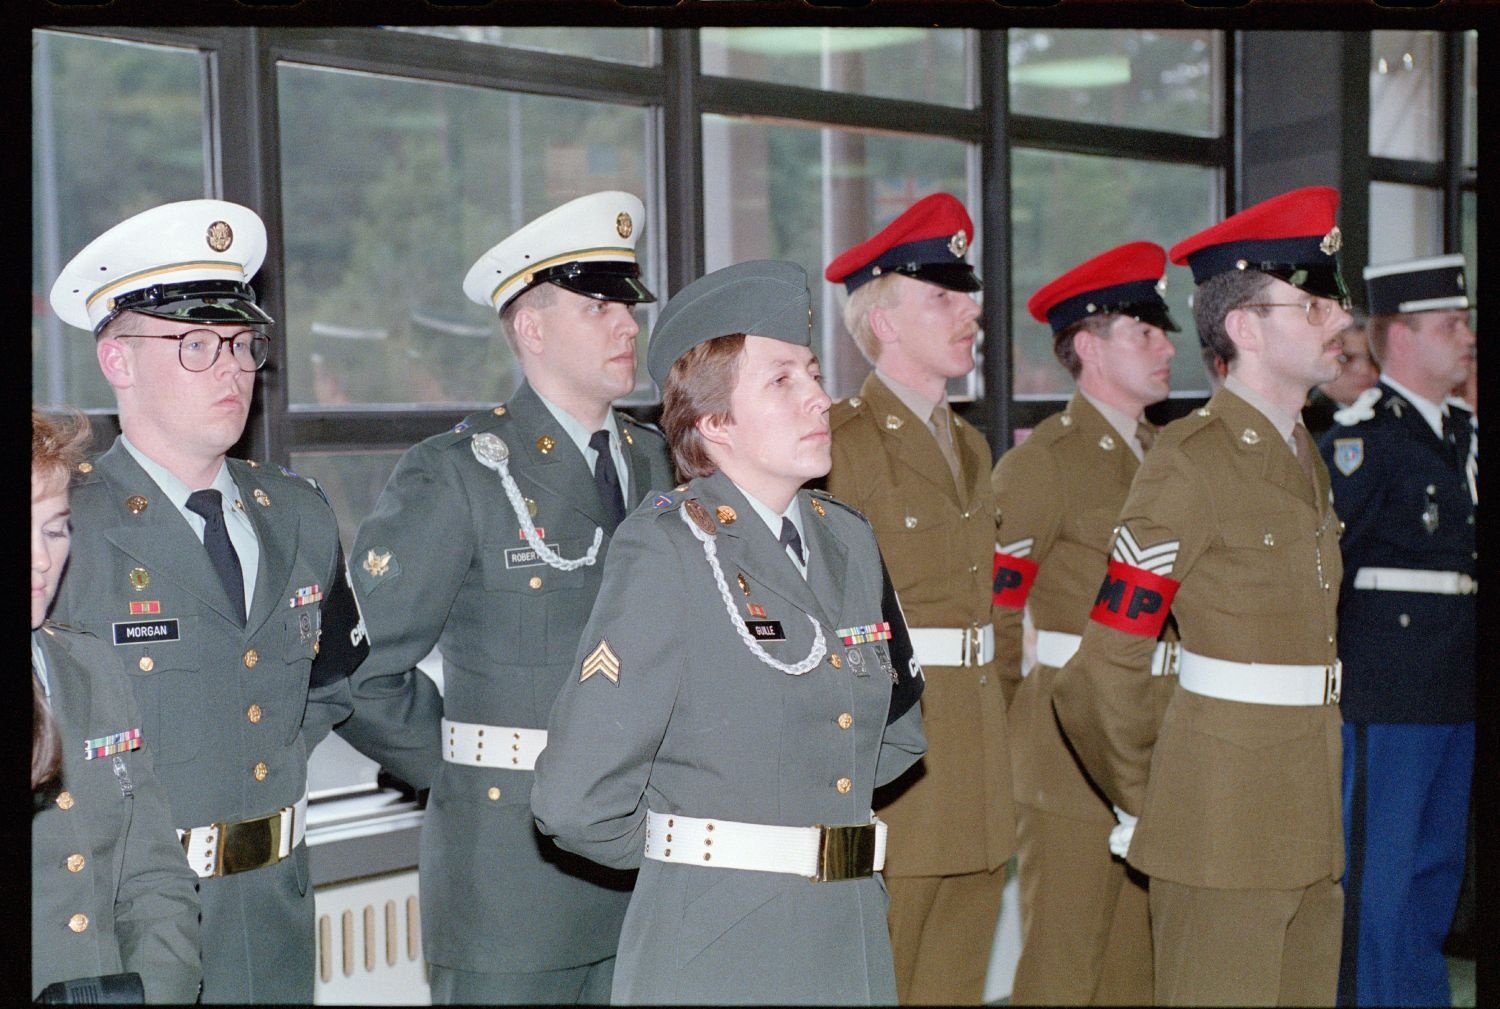 Fotografie: Schließung des Allied Checkpoint Bravo in Berlin-Zehlendorf (AlliiertenMuseum/U.S. Army Photograph Public Domain Mark)